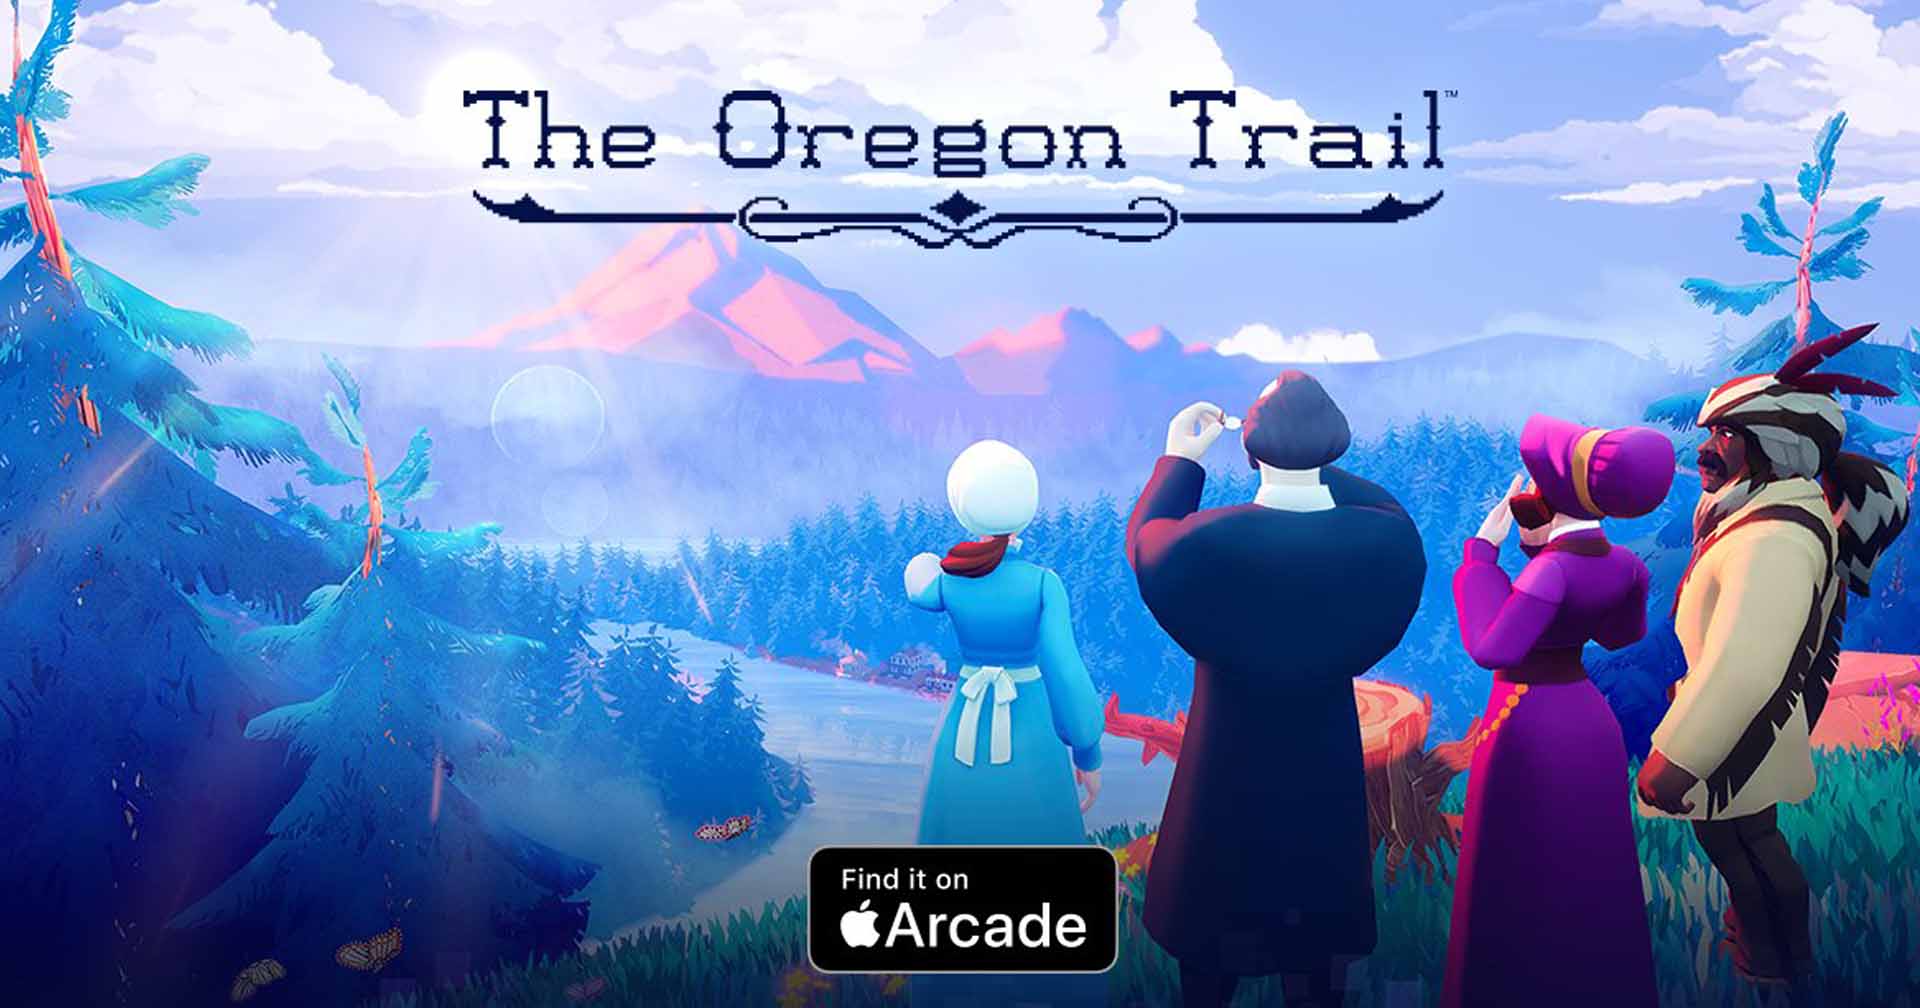 [รีวิวเกม] The Oregon Trail เกมวางแผนผจญภัยบนเส้นทางการค้าสุดทรหด